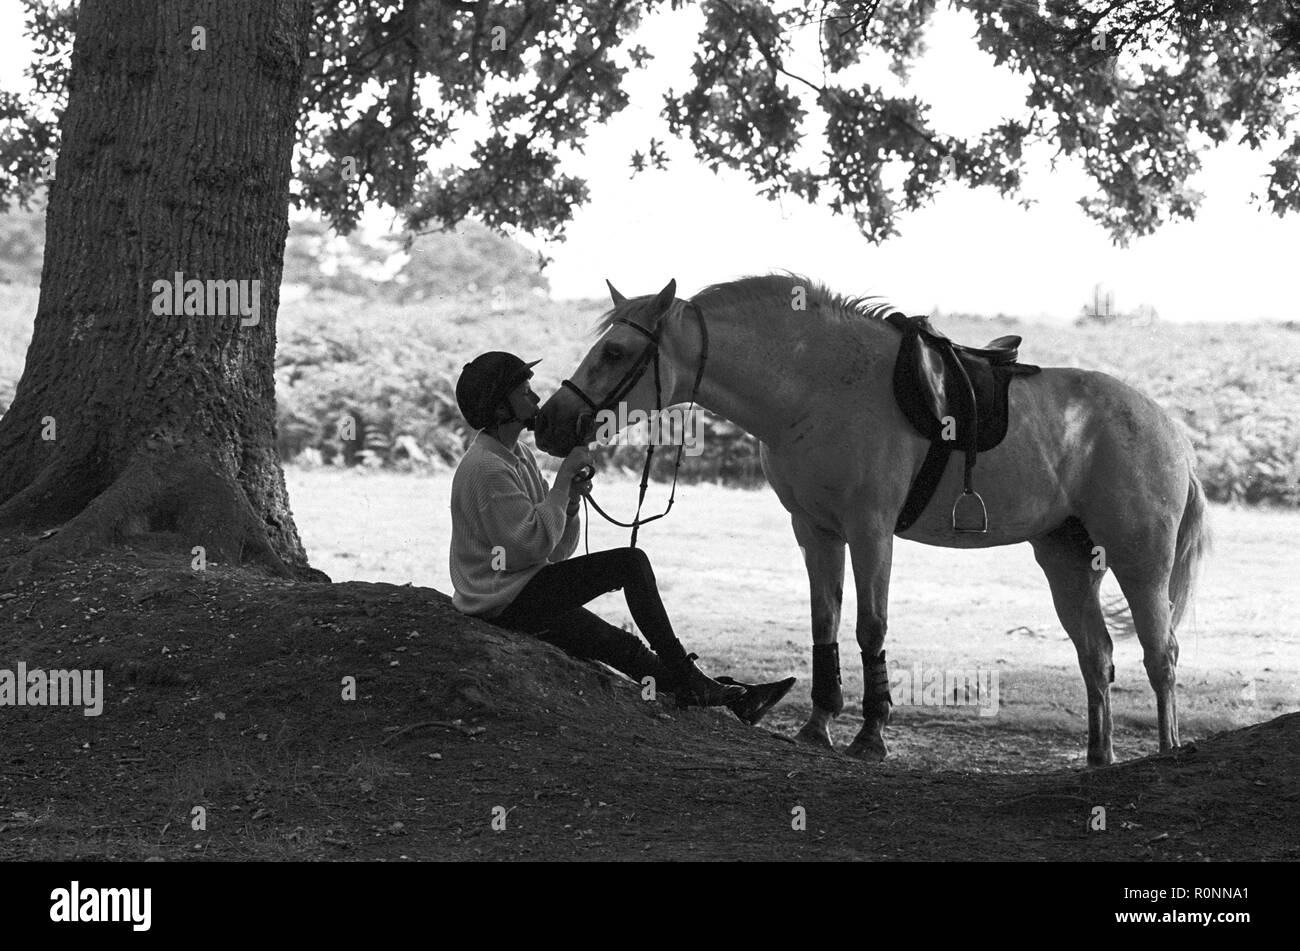 Una giovane ragazza in equipaggiamento da guida si trova sotto un albero estivo nella New Forest, Hampshire, e dà il suo pony bianco e migliore amico un bacio. Fotografia b&w vintage Foto Stock